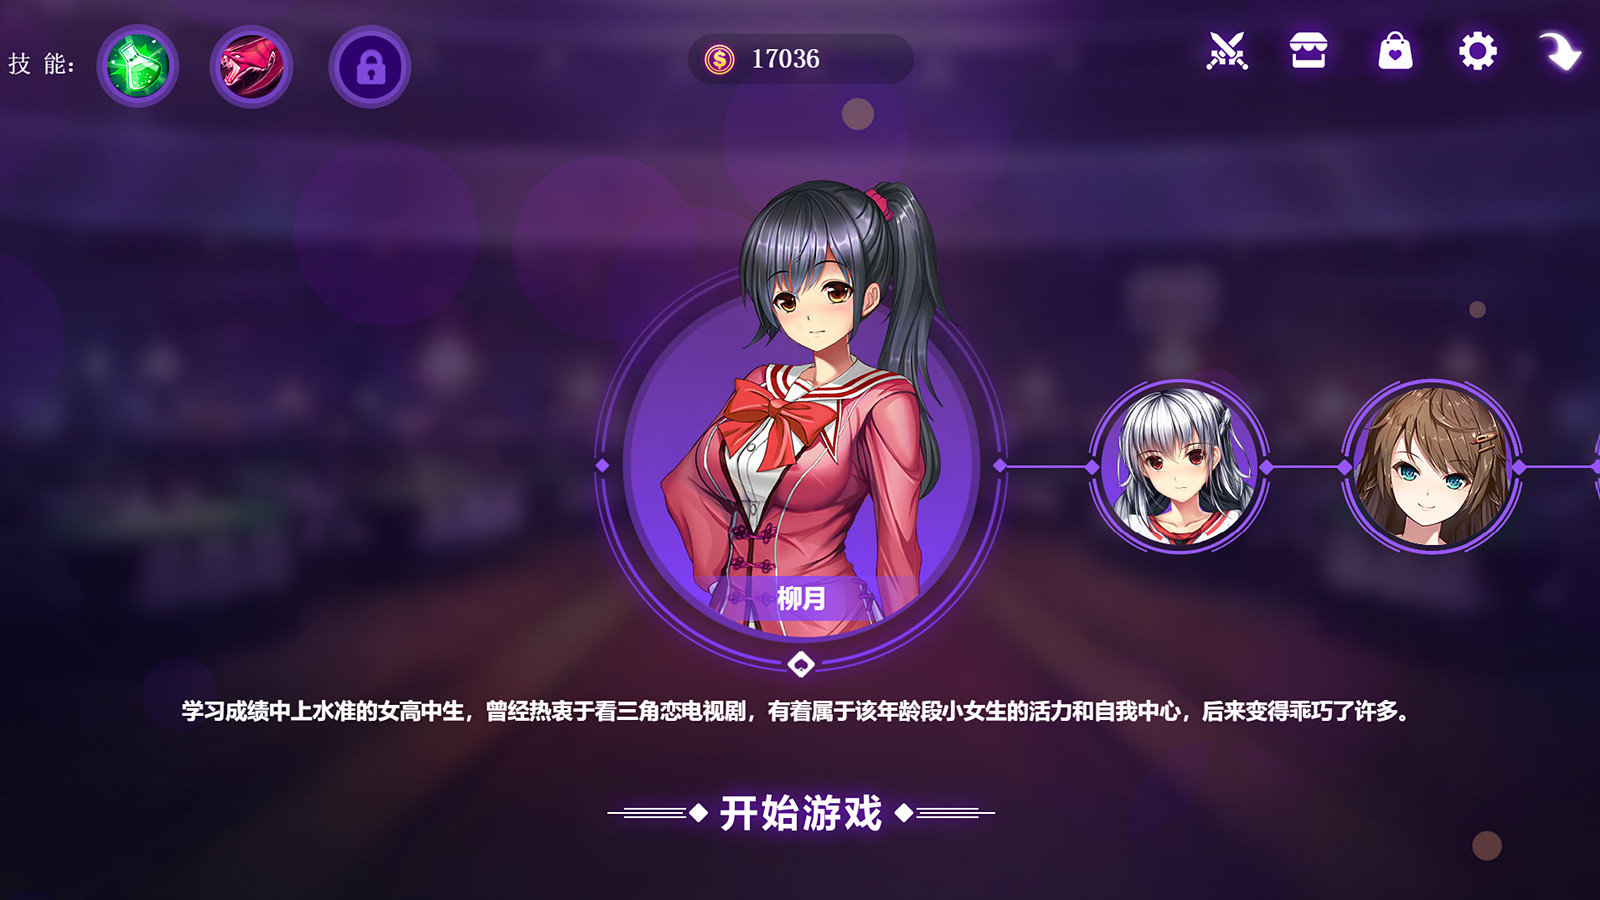 斗地主少女 V1.1.08 官方中文版 存档+BGM+音效包+等等